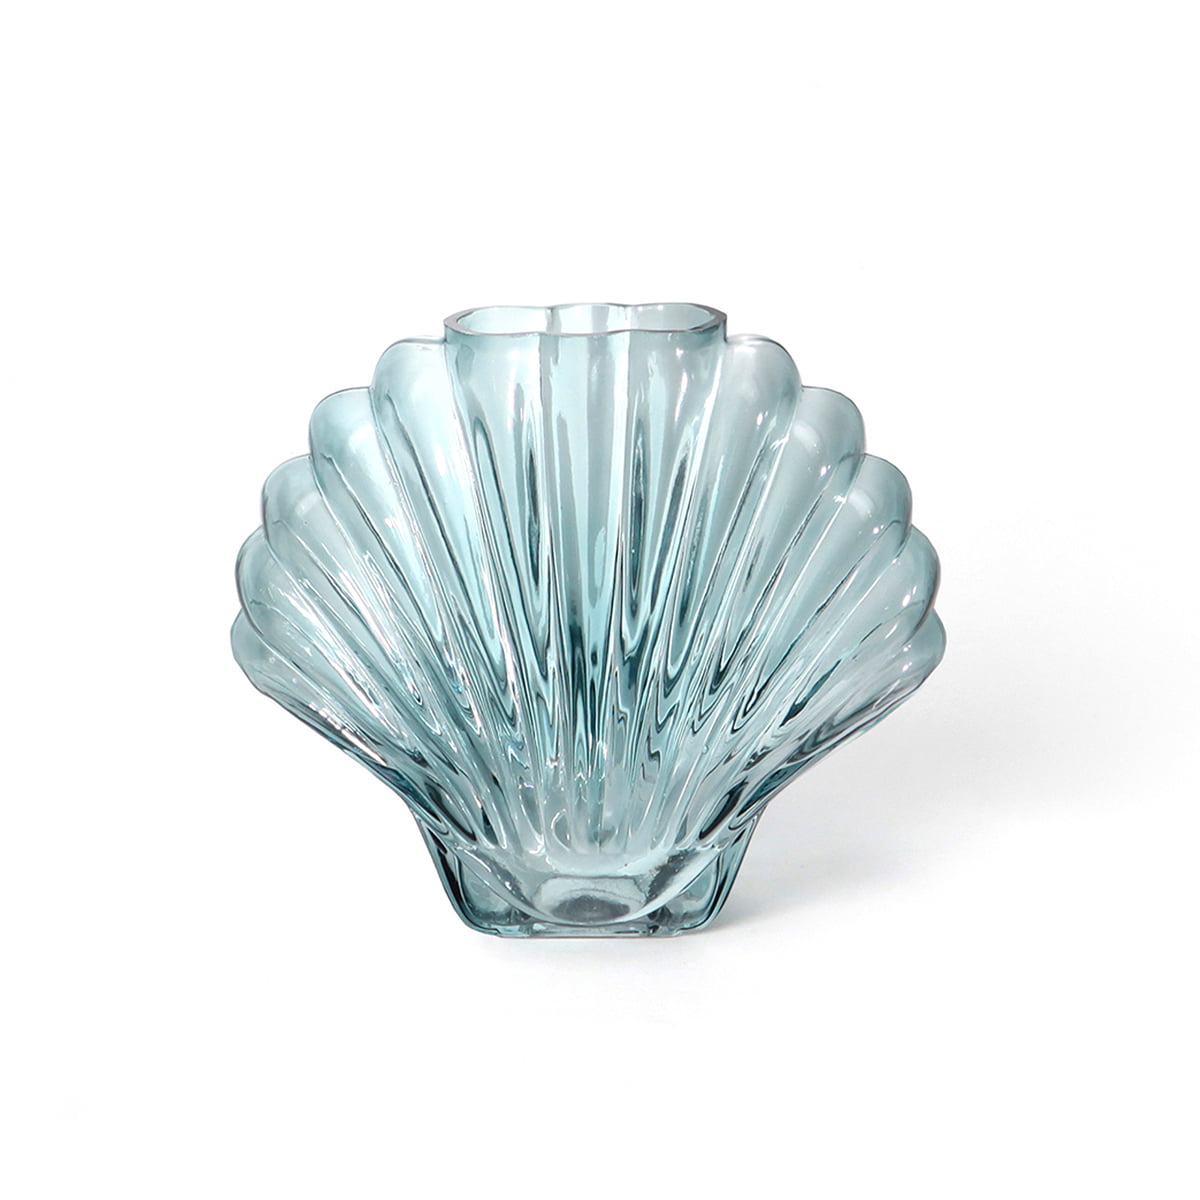 DOIY - Seashell Vase